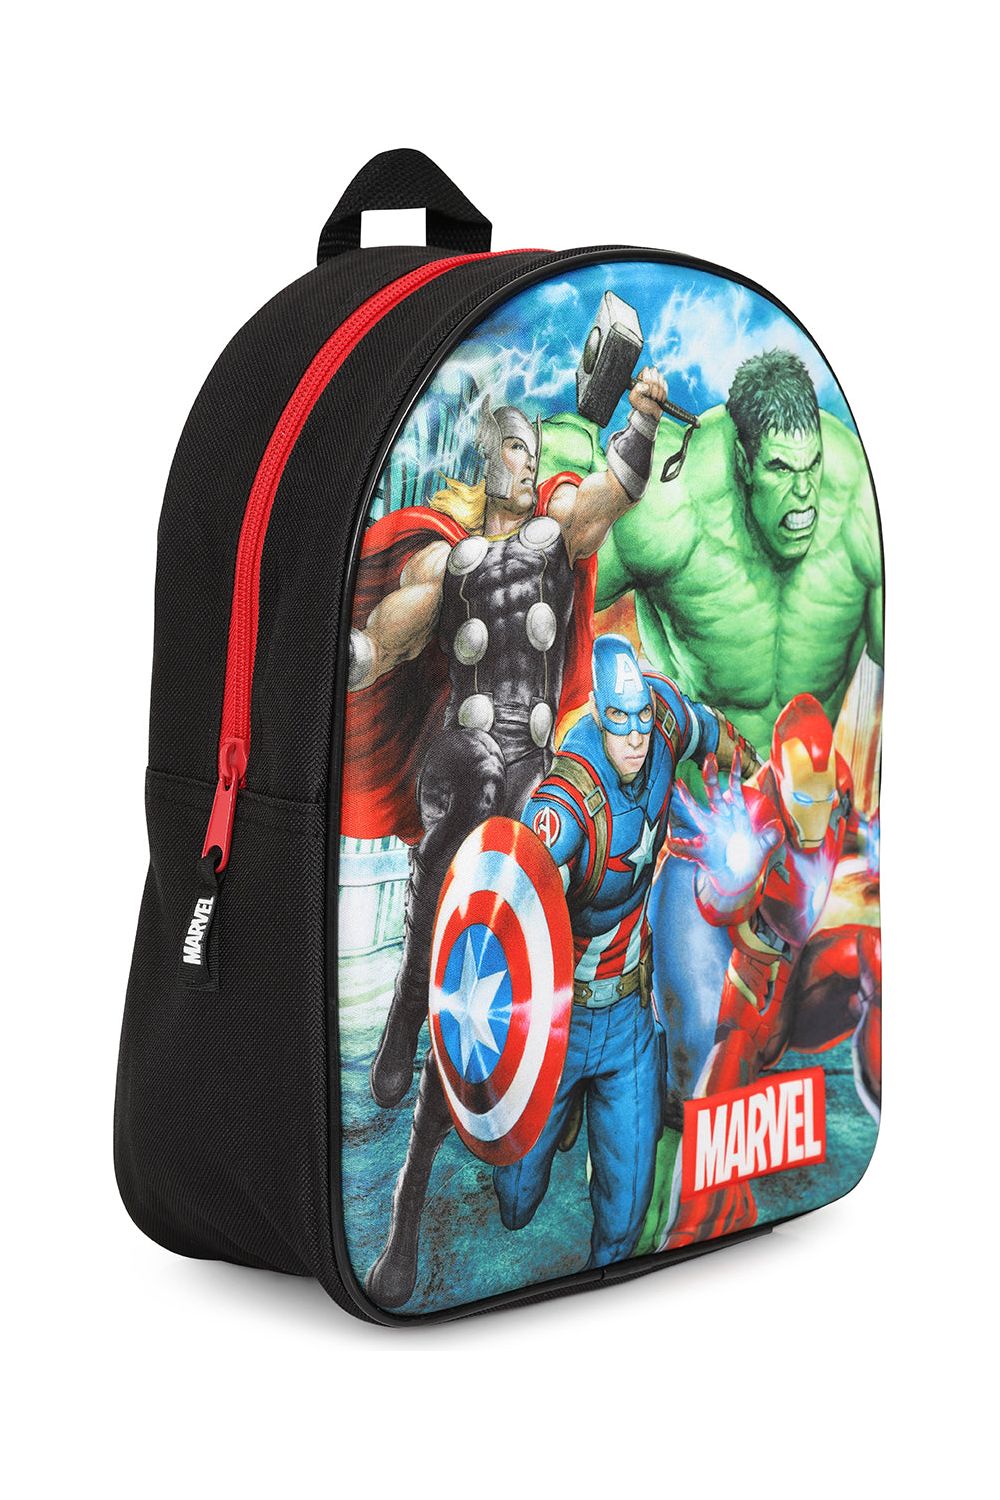 Official Marvel Avengers 3D Backpack Iron Man Hulk Thor Captain Americ